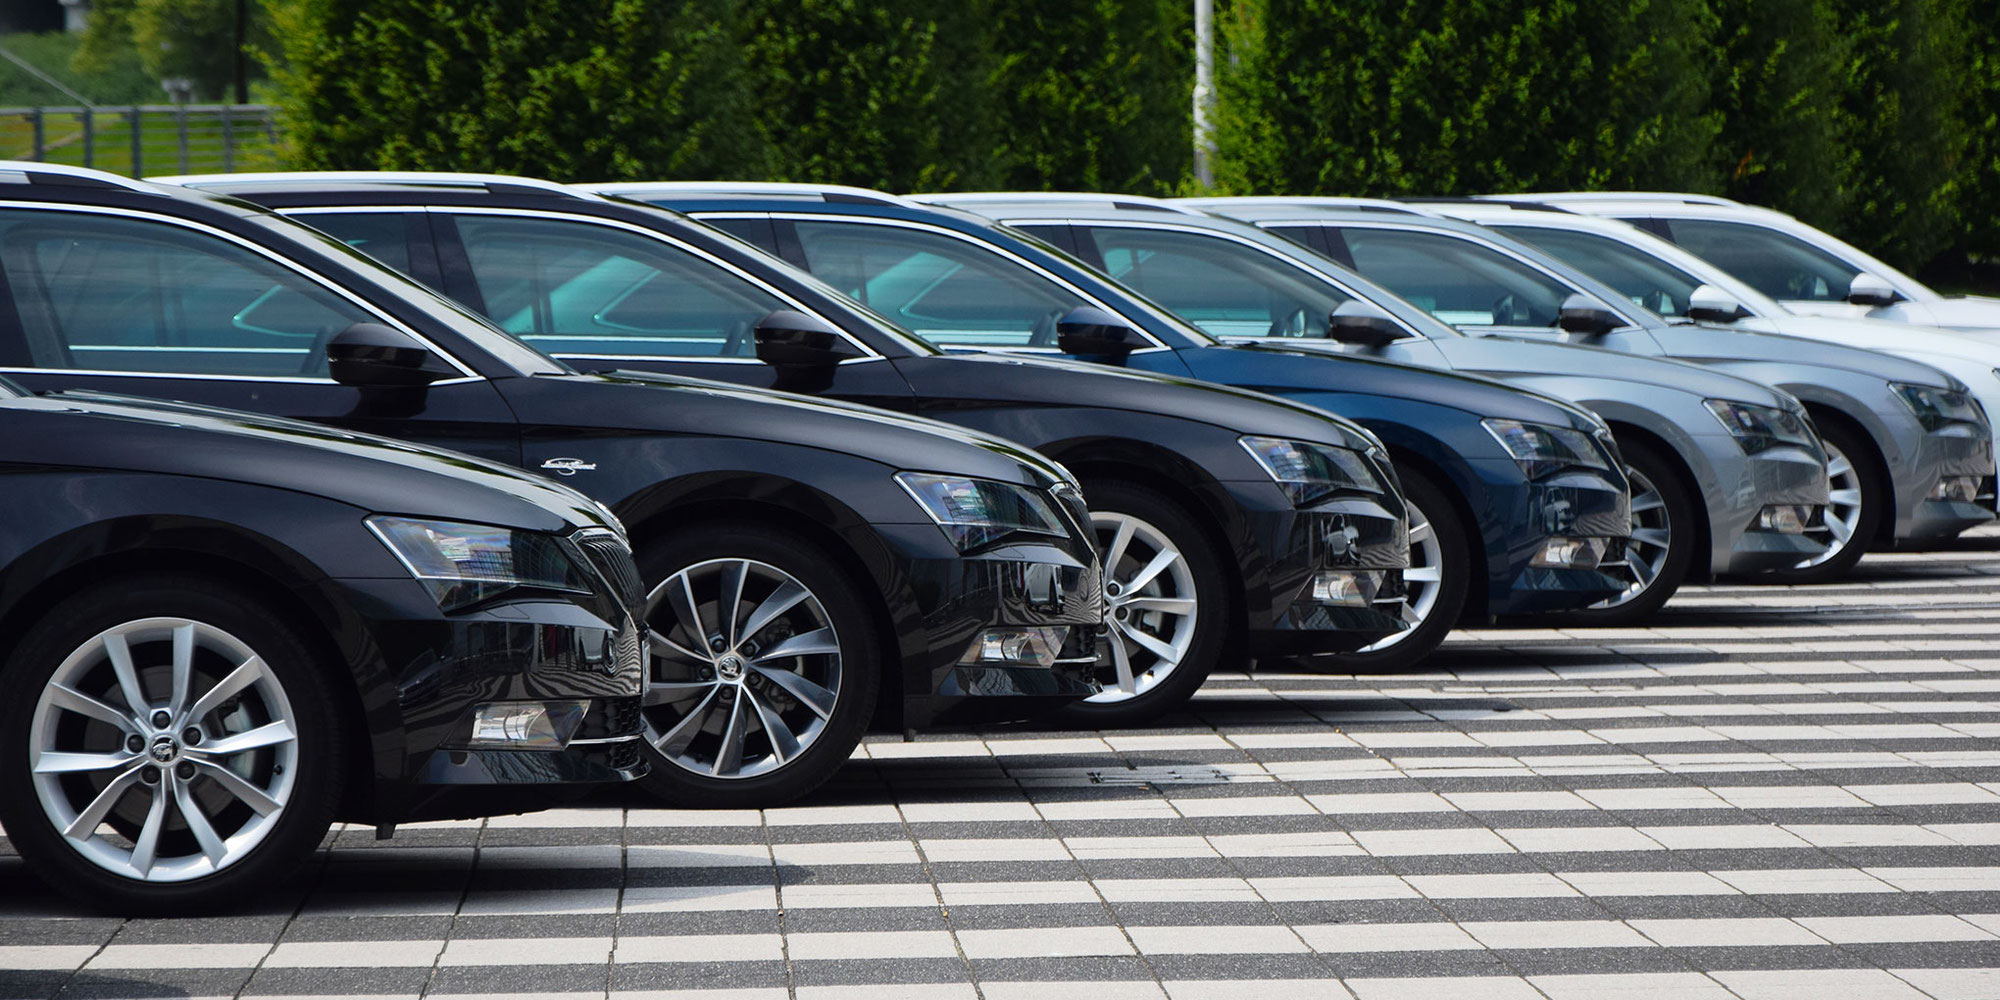 Detrazione IVA ridotta per le auto: proroga in attesa dell’autorizzazione UE